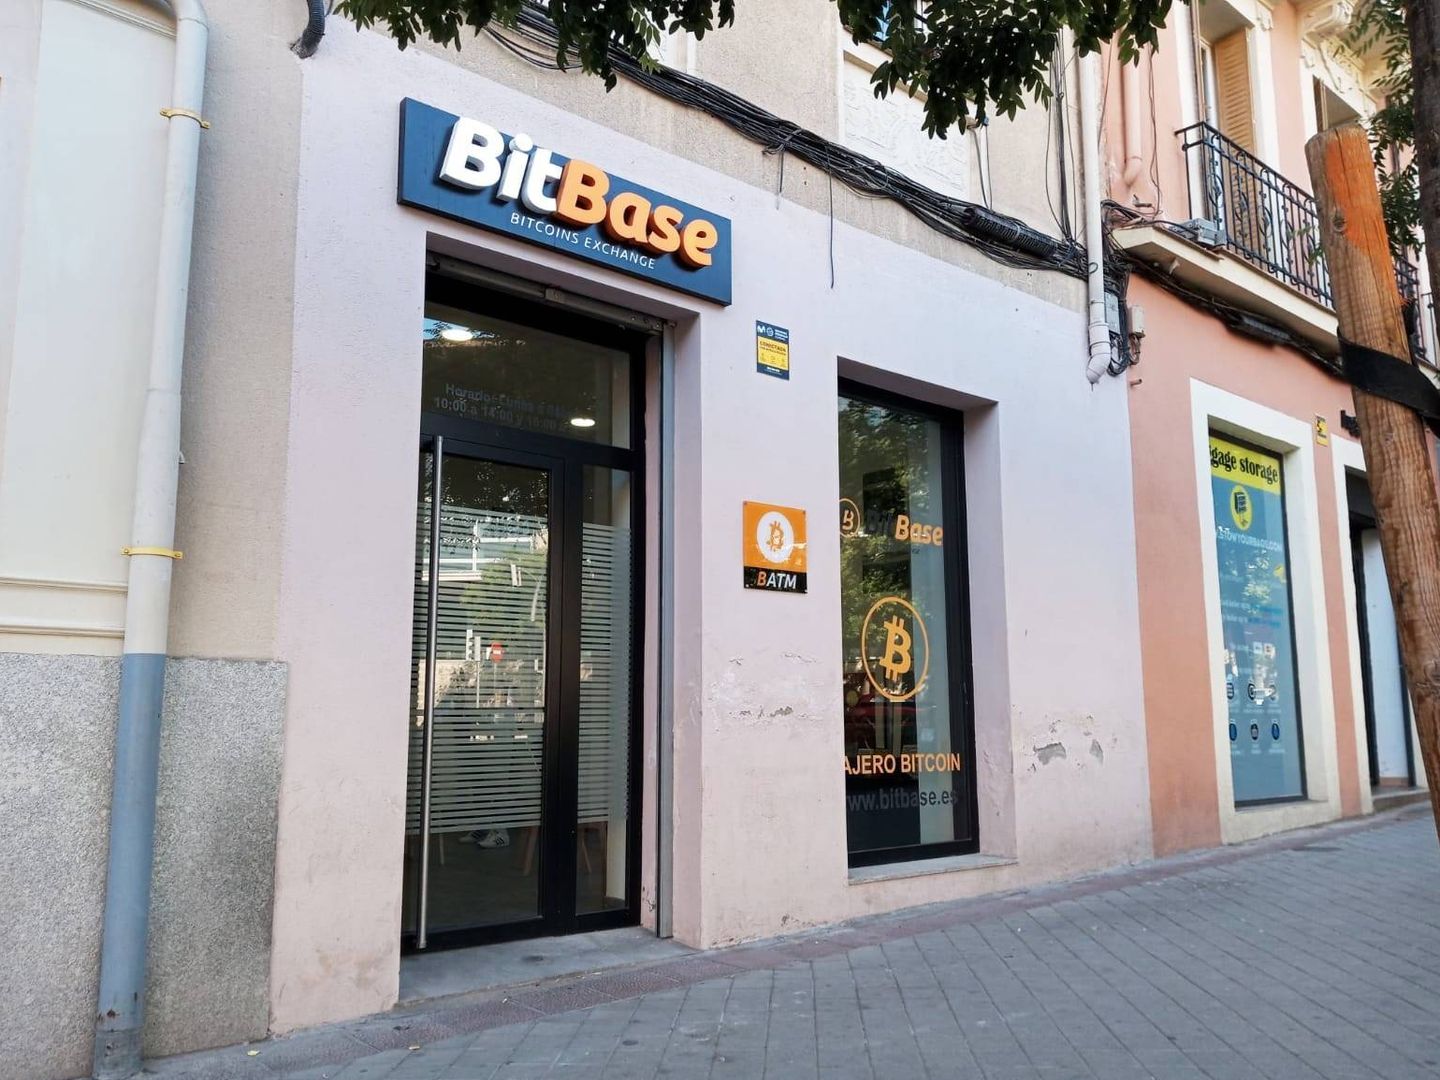 Local de BitBase en la calle General Lacy, Madrid. (J. M.)